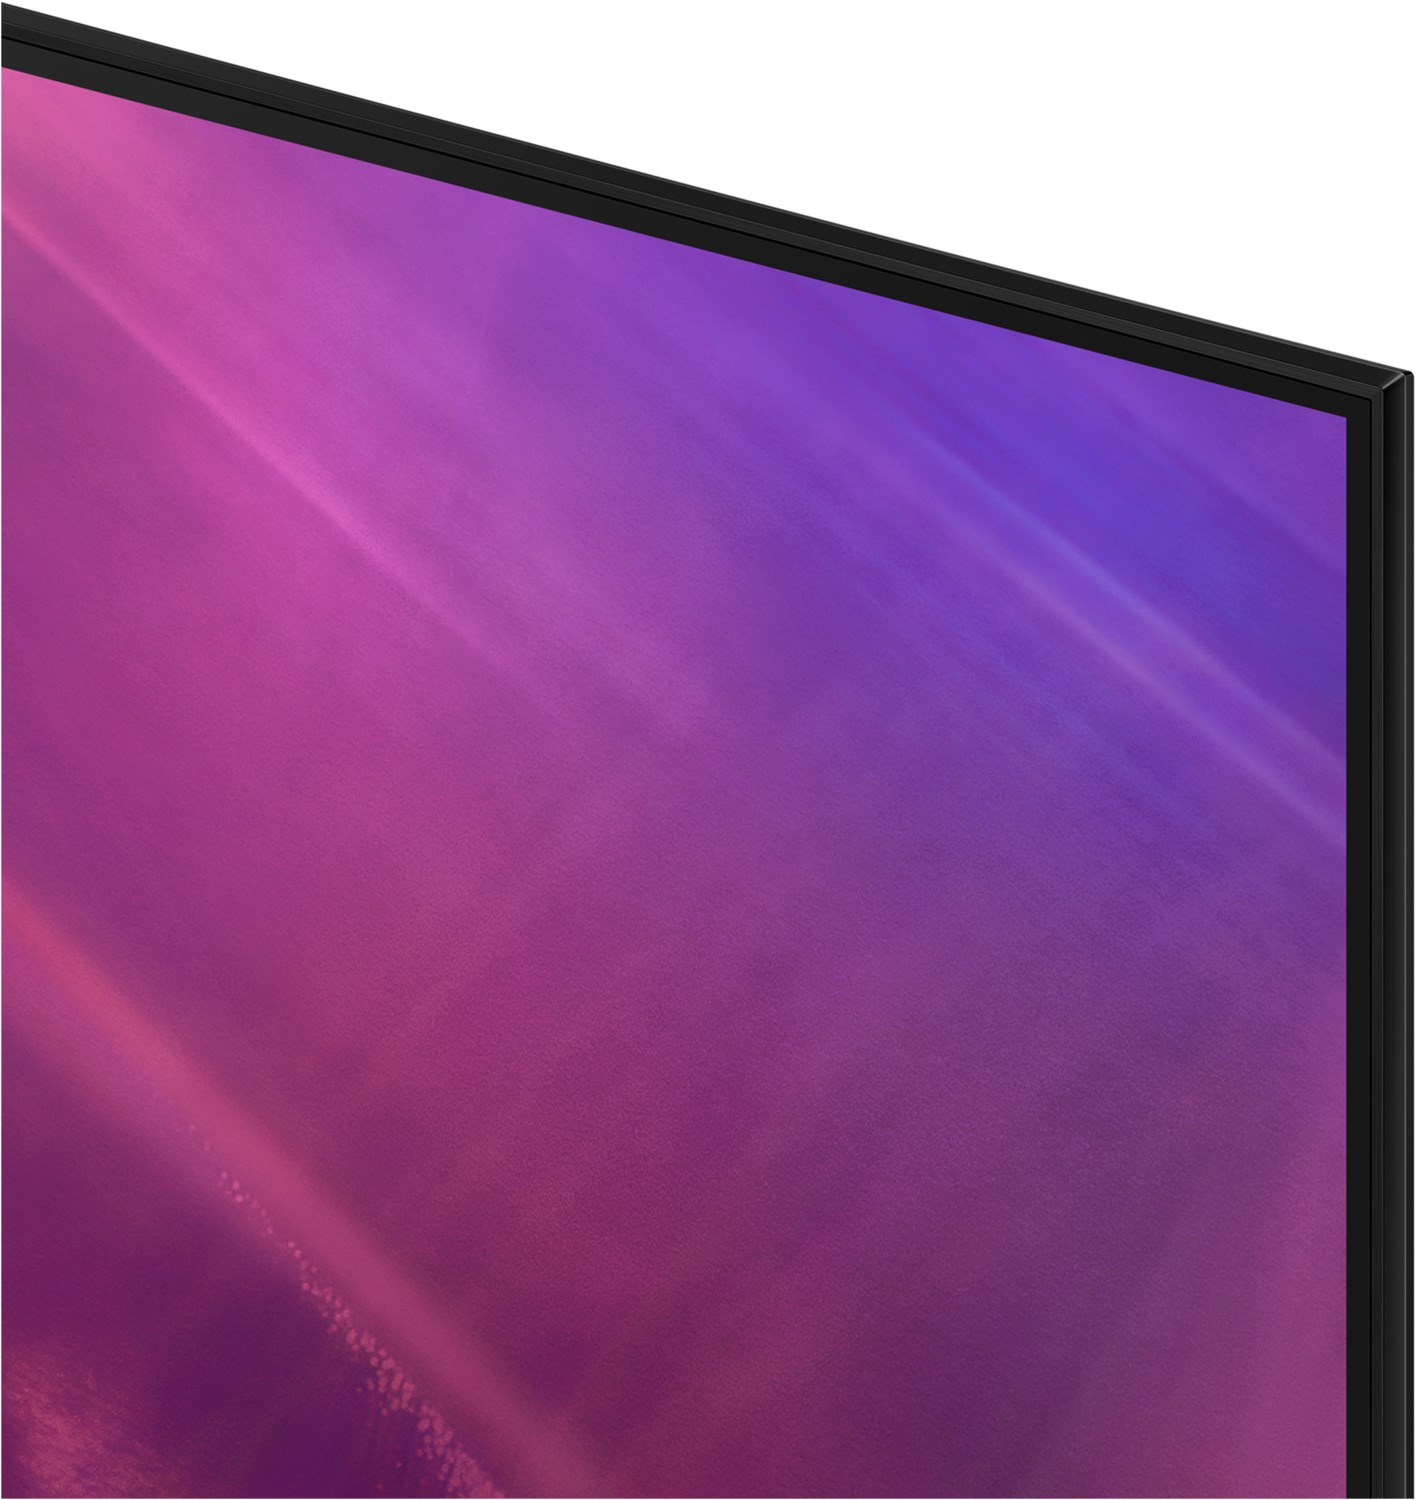 Samsung Crystal UHD TV 65 Zoll (163 cm) AU9079 schwarz